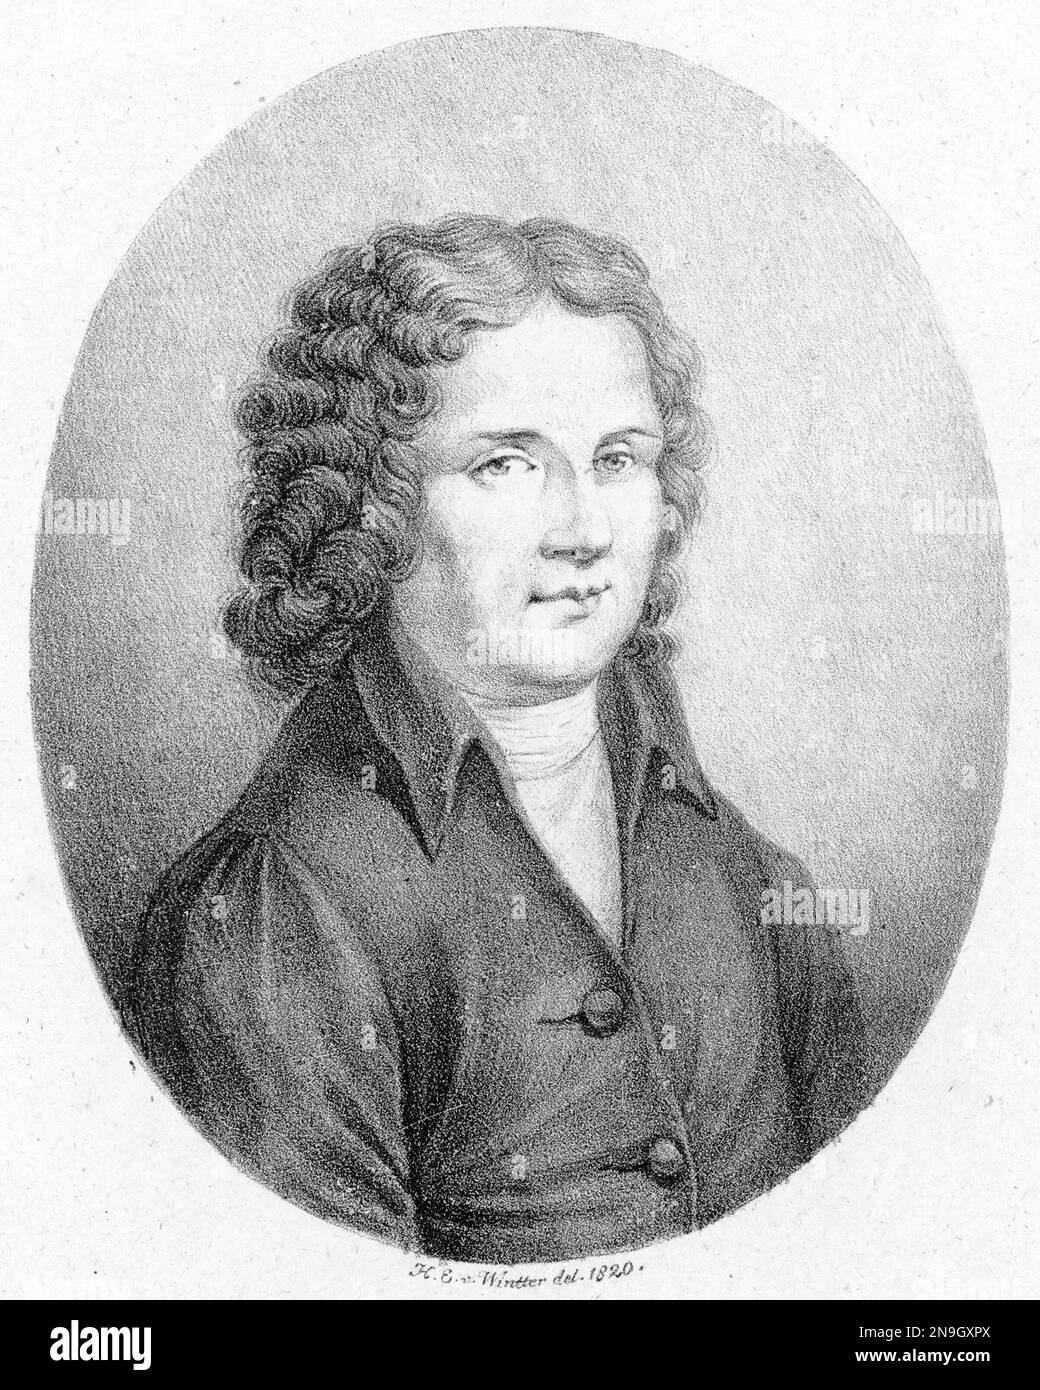 Alessandro Scarlatti, Pietro Alessandro Gaspare Scarlatti (2 May 1660 – 22 October 1725) was an Italian Baroque composer. Stock Photo